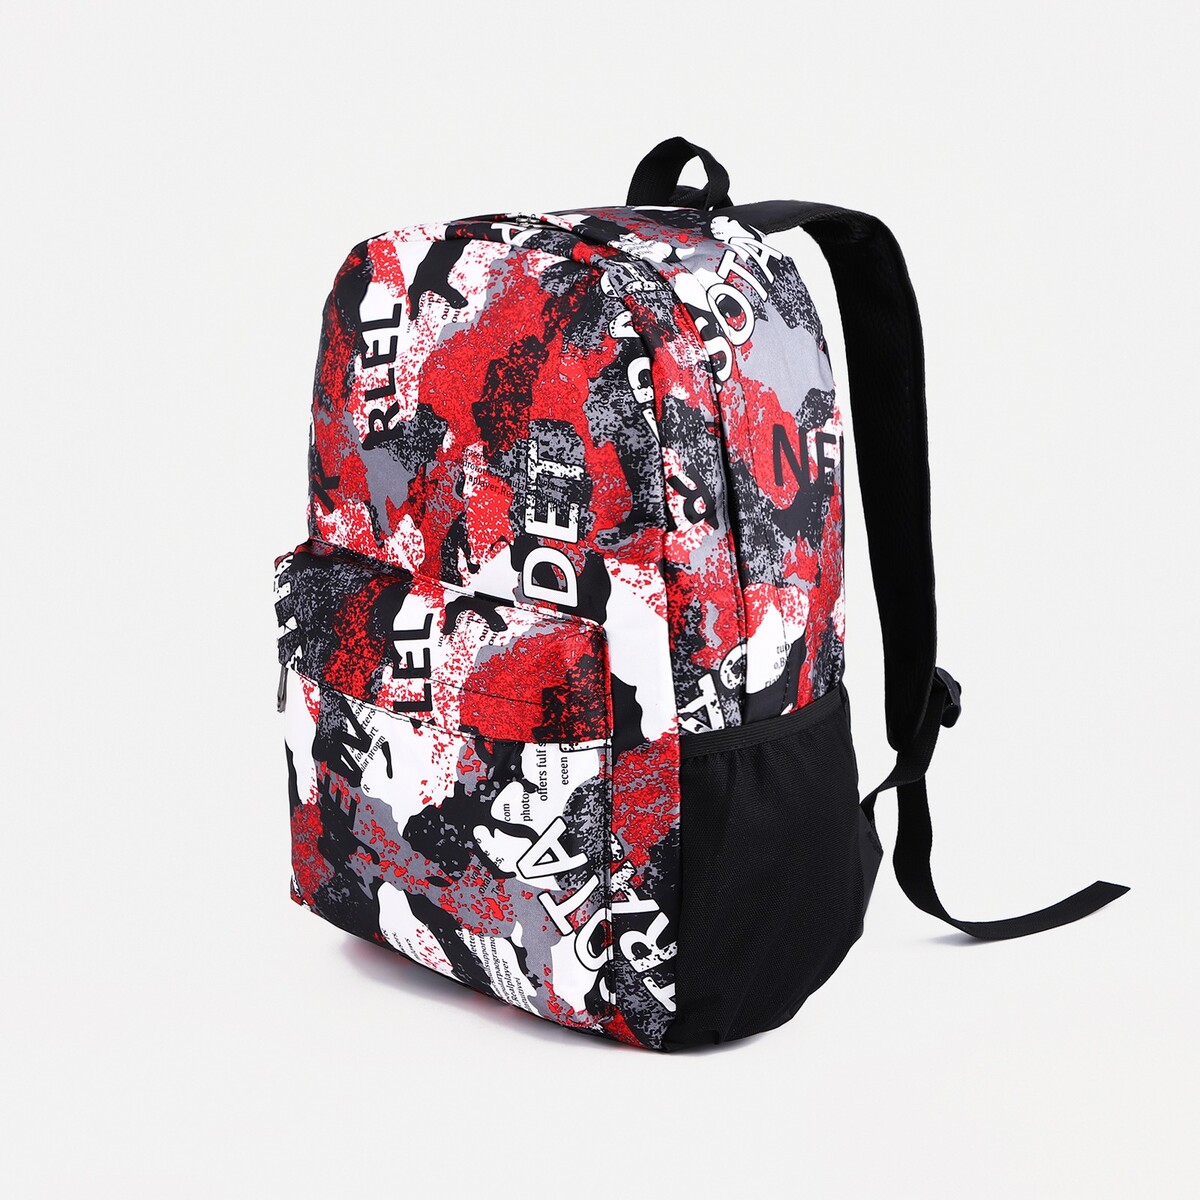 Рюкзак молодежный из текстиля, 3 кармана, цвет серый/красный рюкзак сумка из текстиля на молнии 3 кармана отдел для ноутбука серый